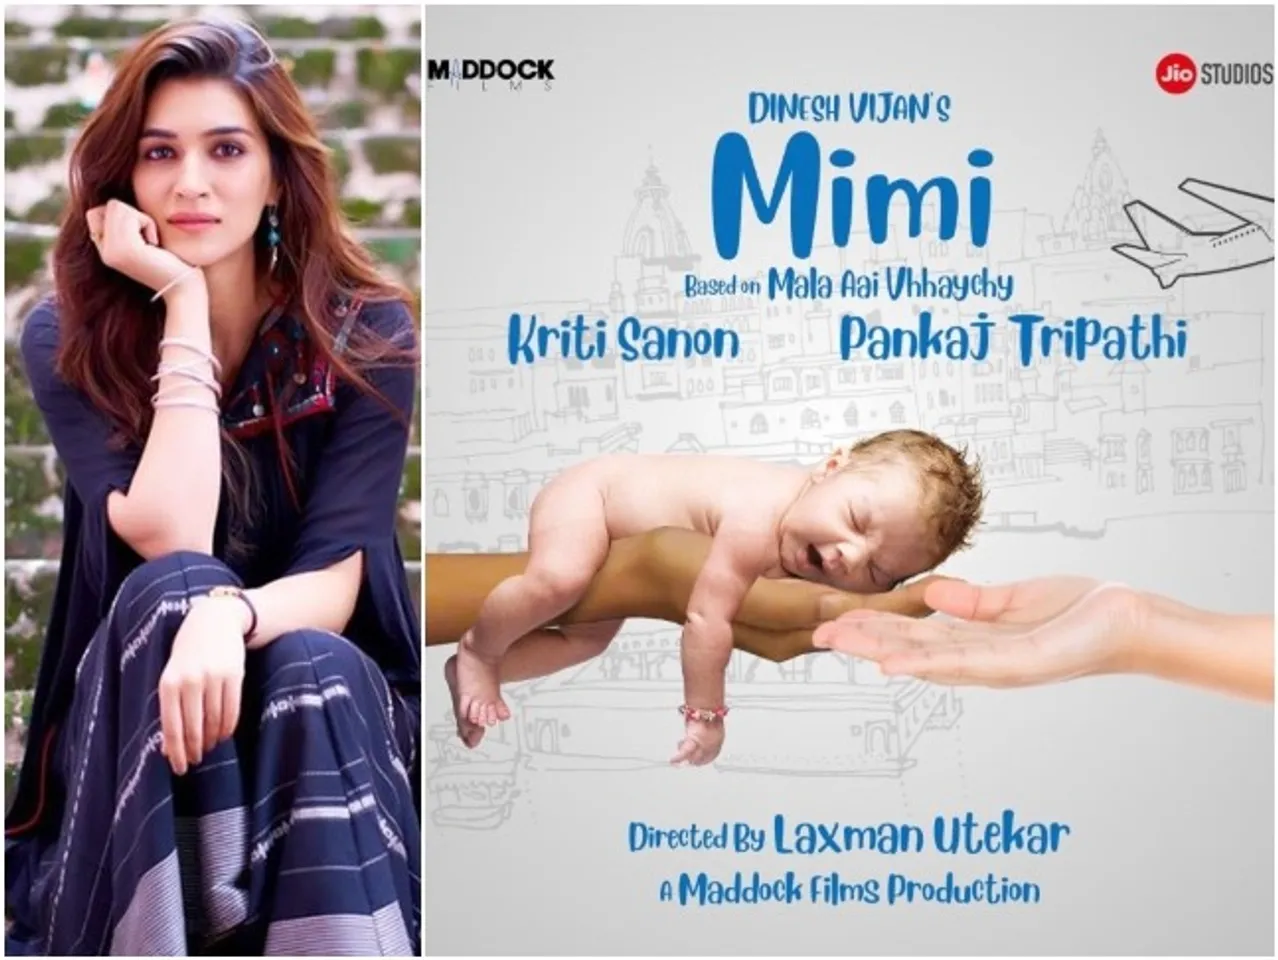 Kriti Sanon फिल्म Mimi में करने जा रही है सेरोगेसी माँ का किरदार ,15 किलो बढ़ाया वजन